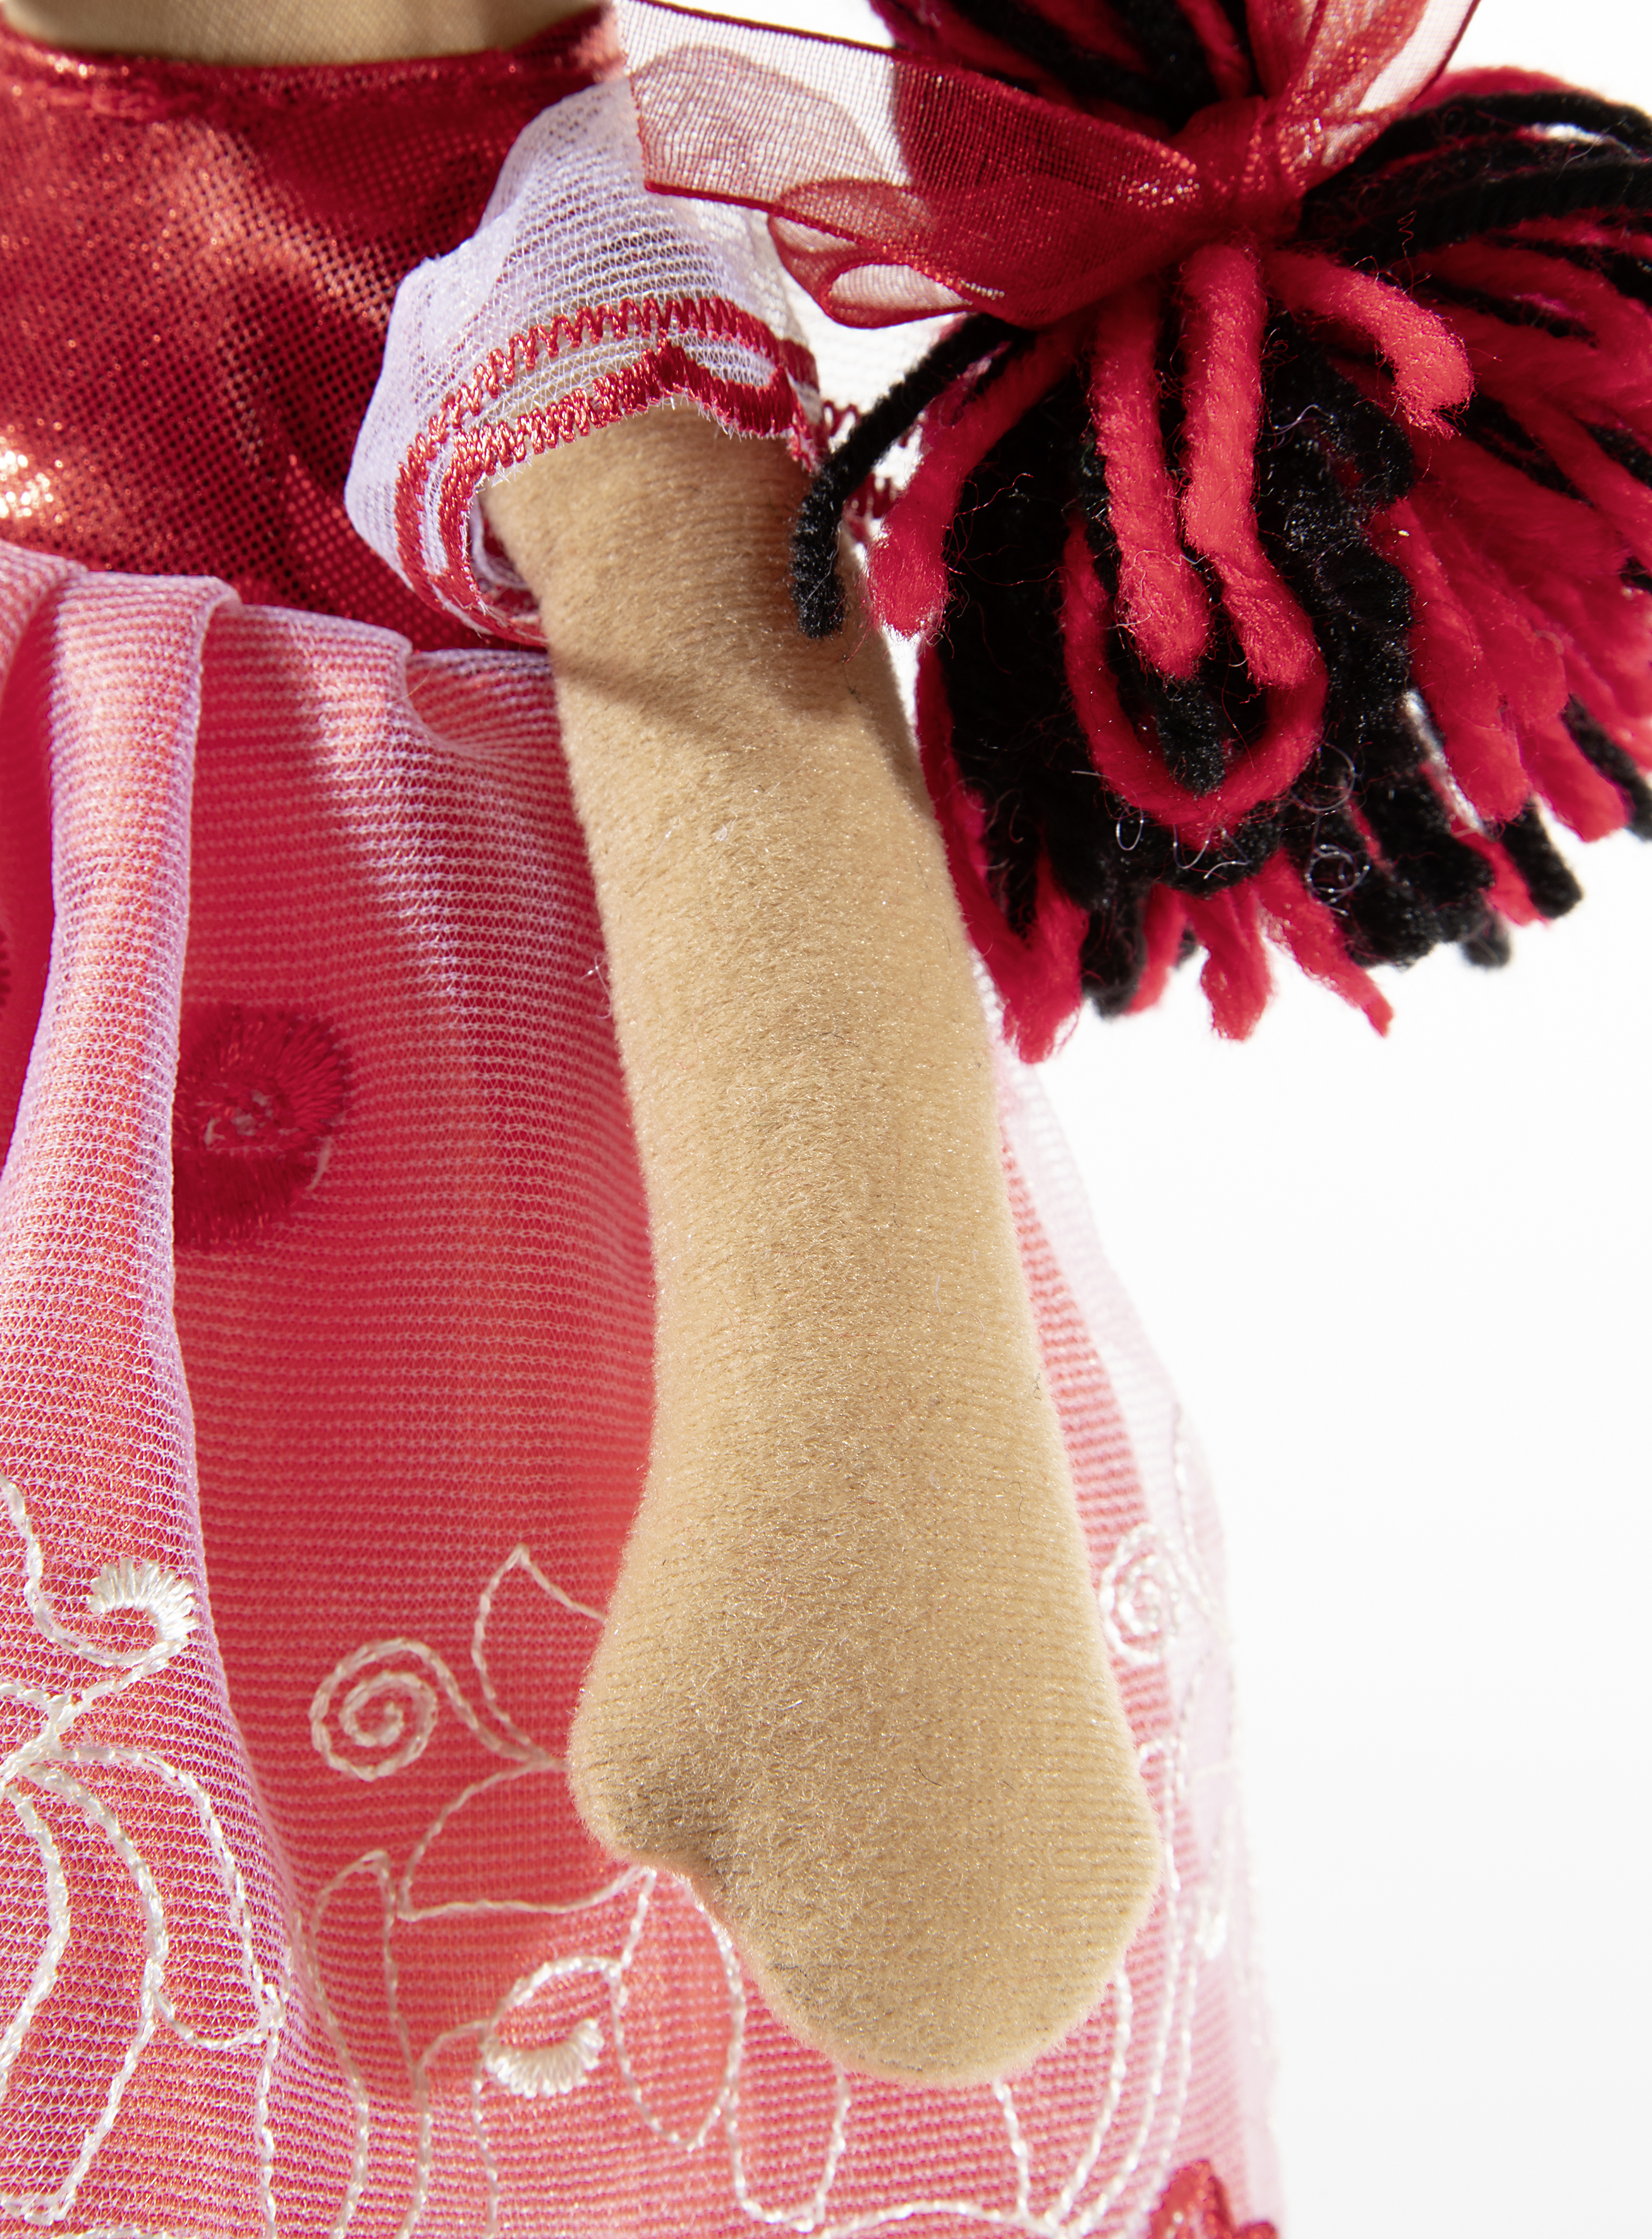 Heunec Bella-Rossa in 35cm aus der Bambola Dolce Serie mit rot-schwarzen Haaren Hand